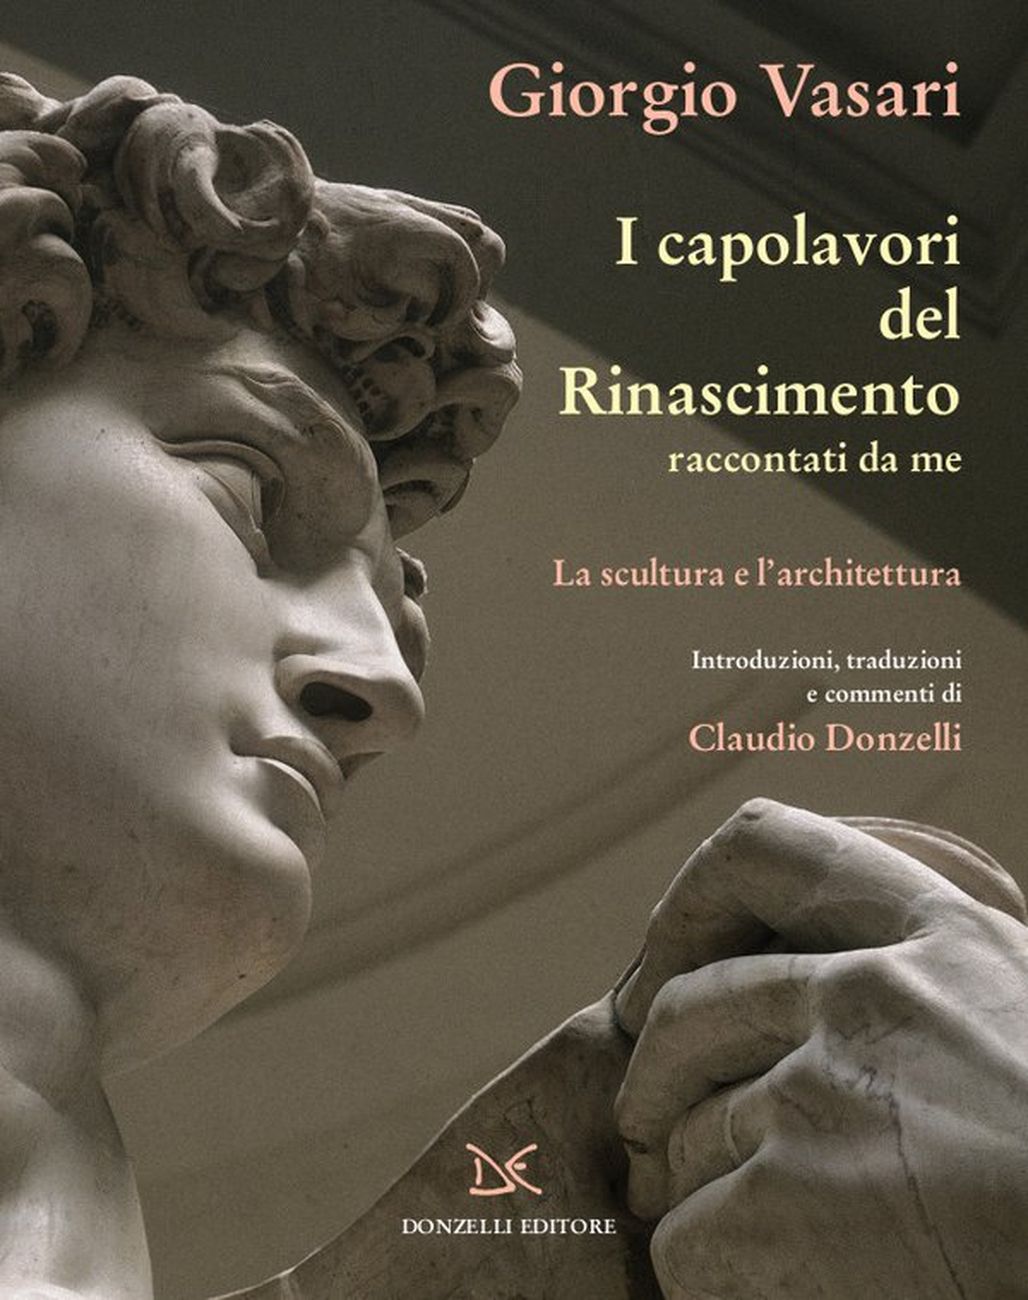 Giorgio Vasari – I capolavori del Rinascimento raccontati da me. La scultura e l'architettura (Donzelli, Roma 2020)